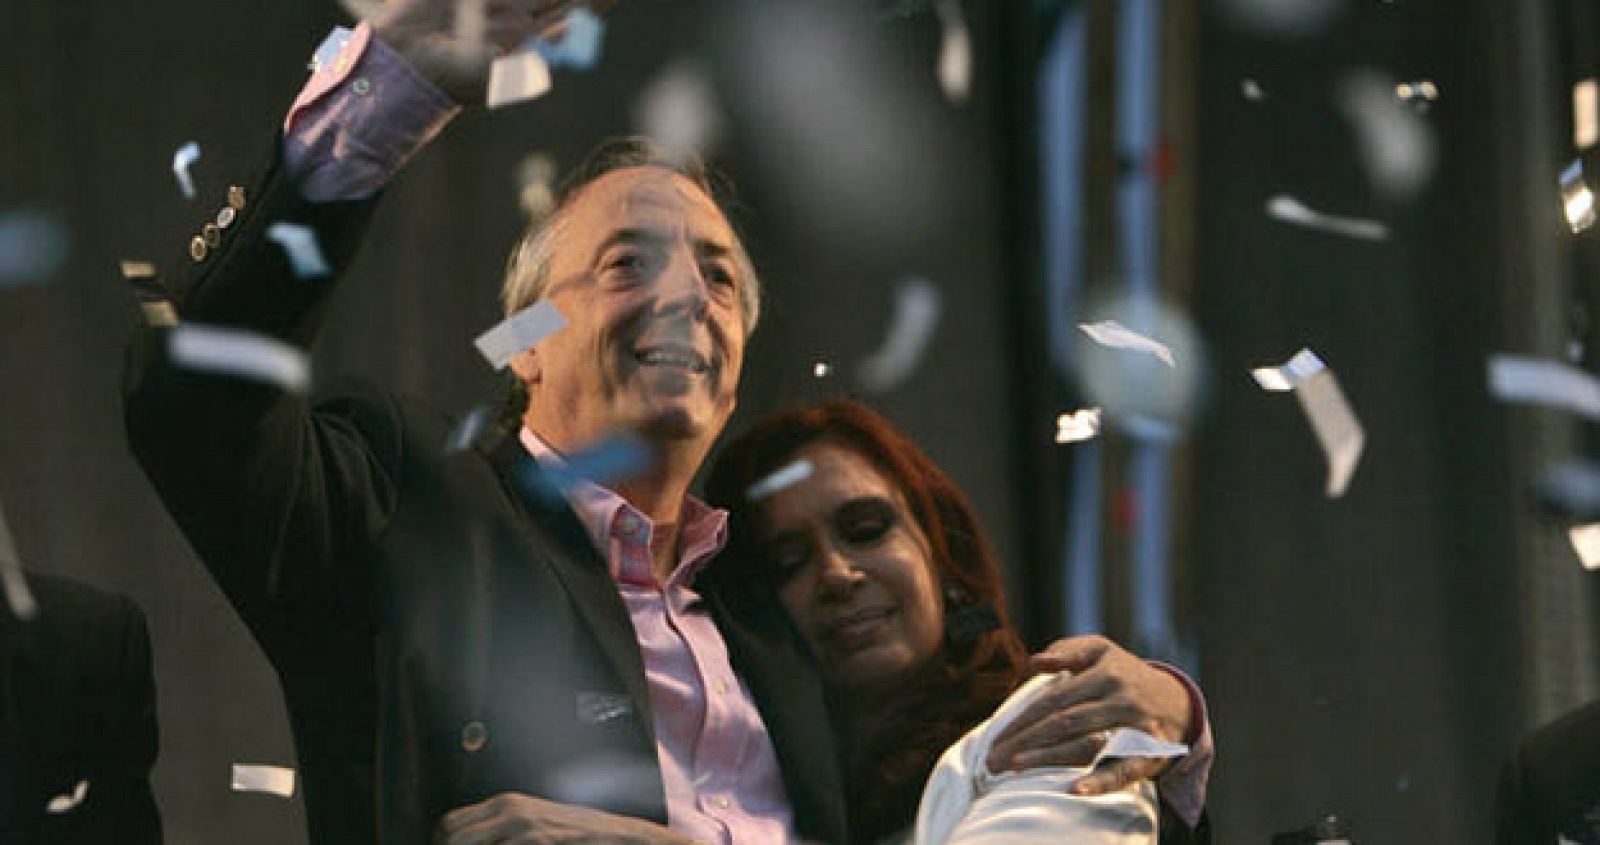 El matrimonio Kirchner durante la campaña electoral de las elecciones presidenciales de 2007